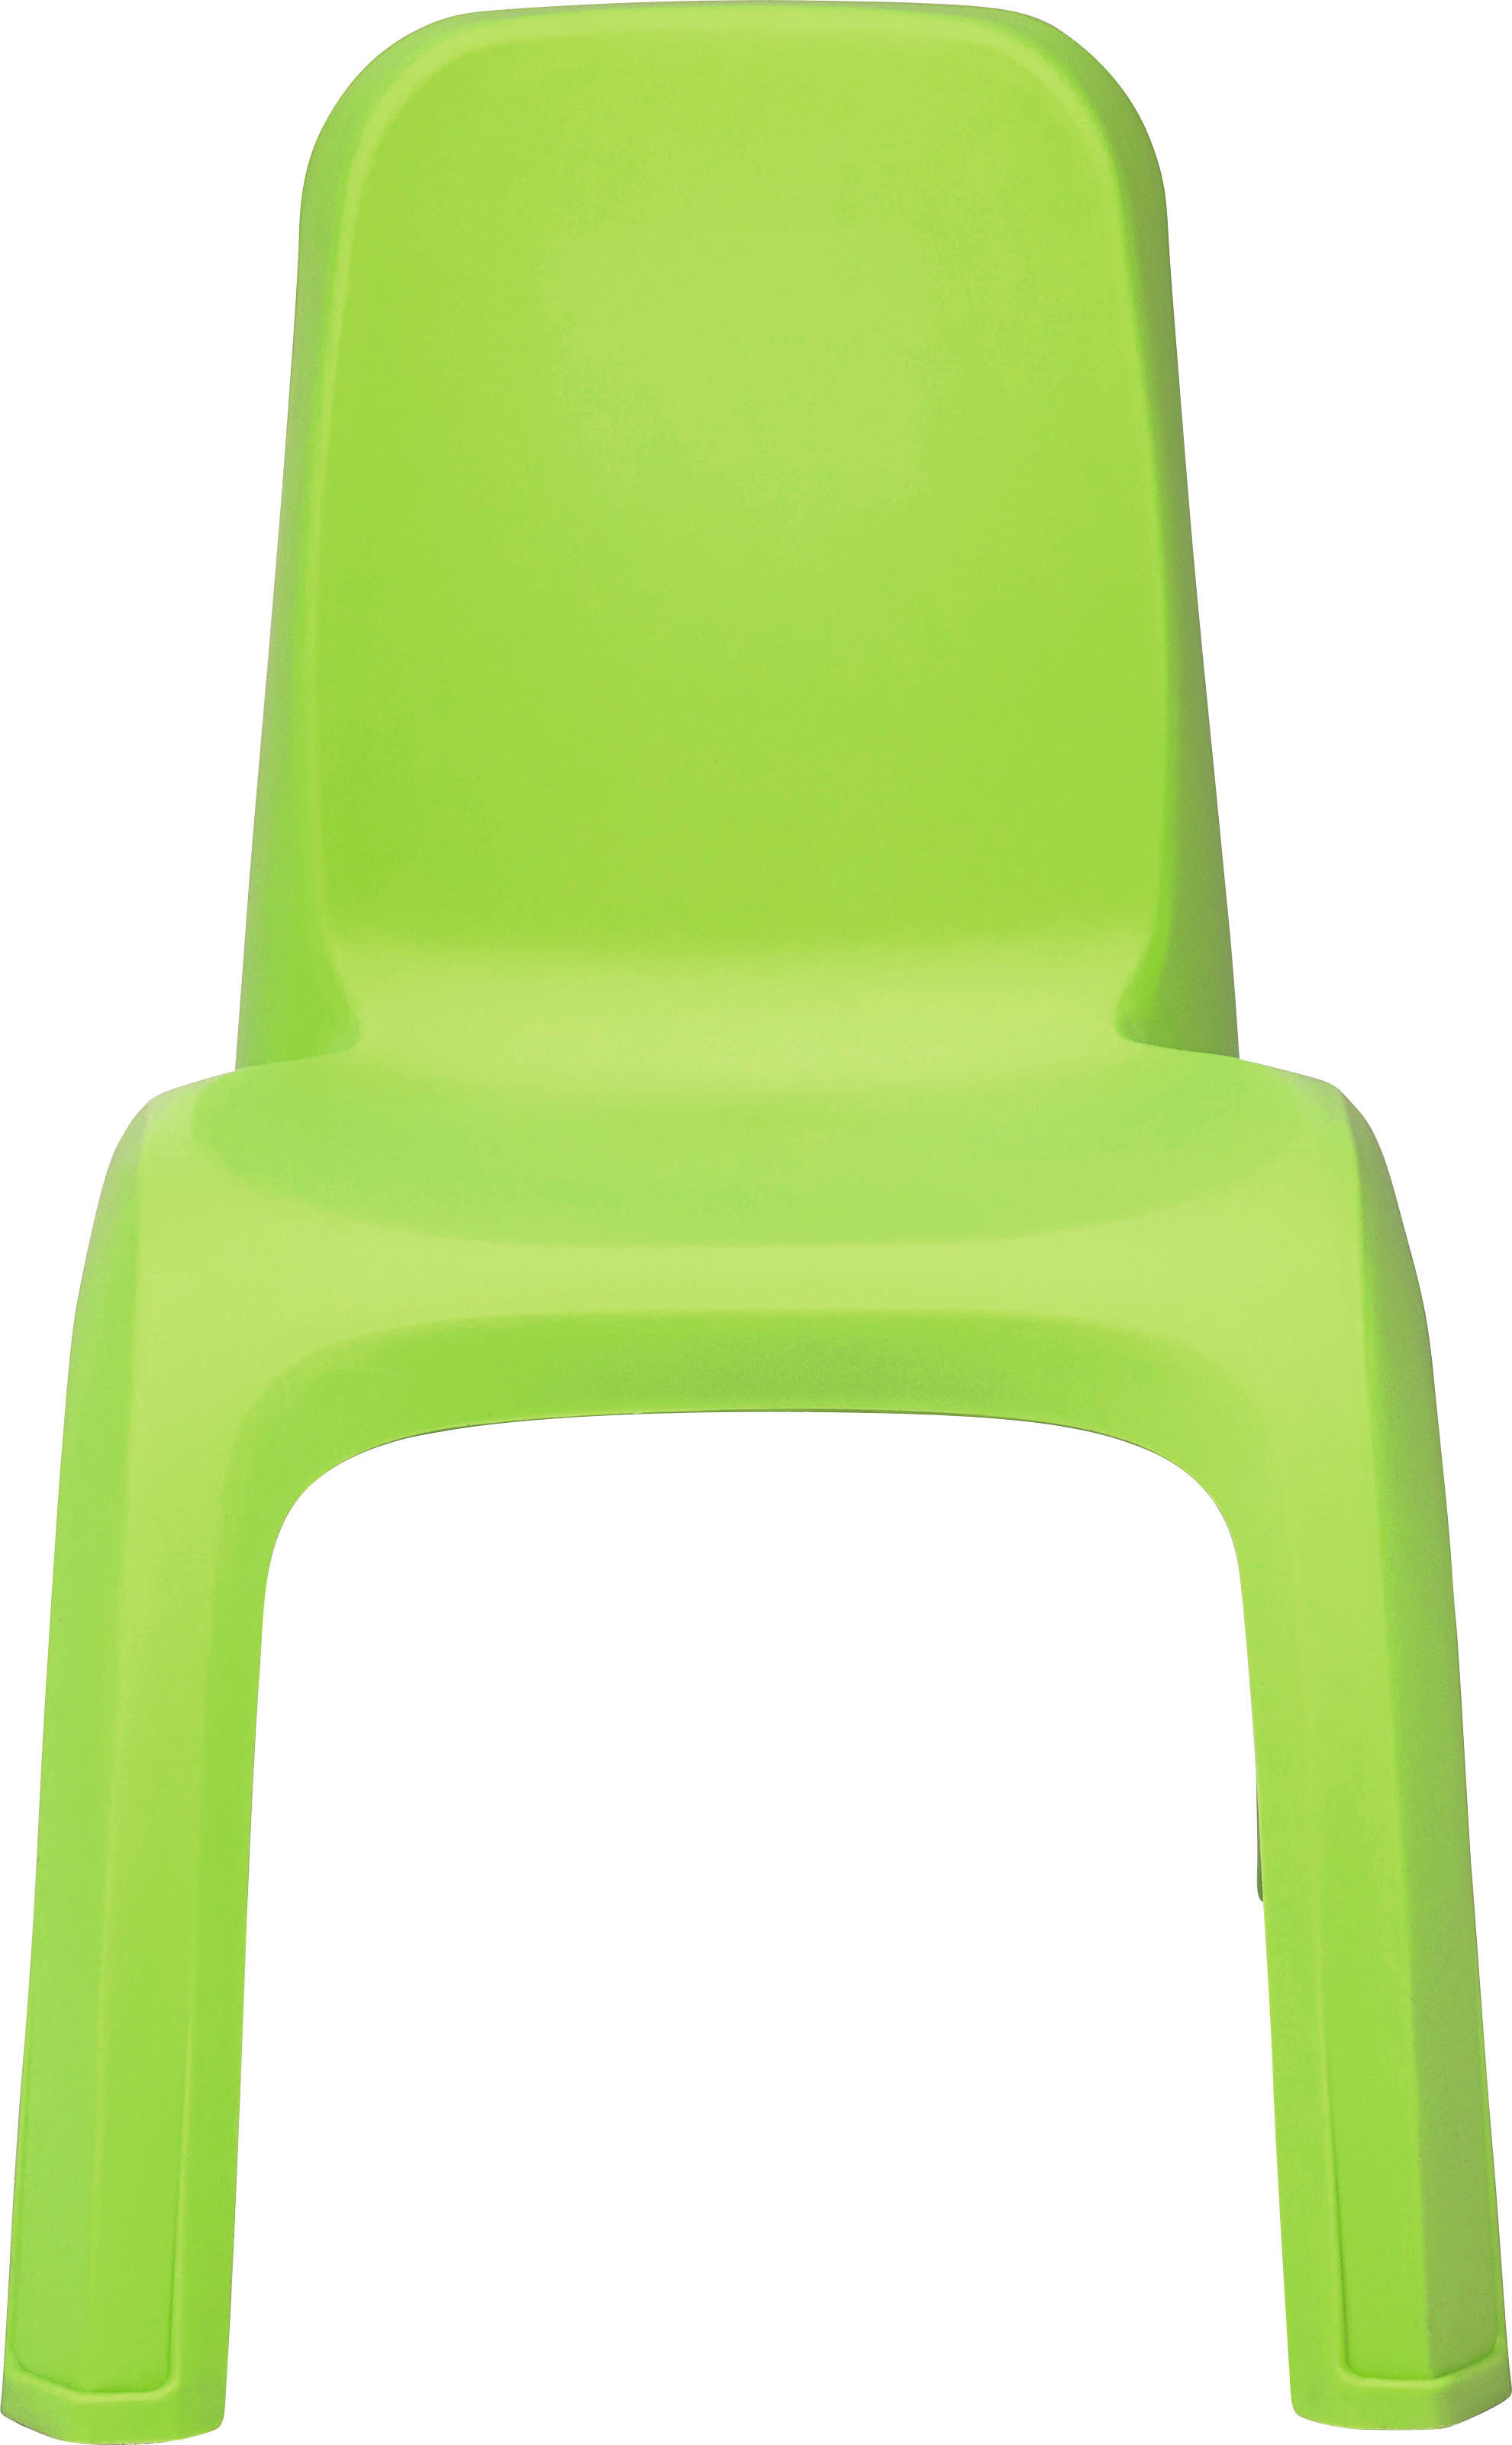 DĚTSKÁ ŽIDLE  - zelená, Trend, plast (35/35/54cm) - My Baby Lou